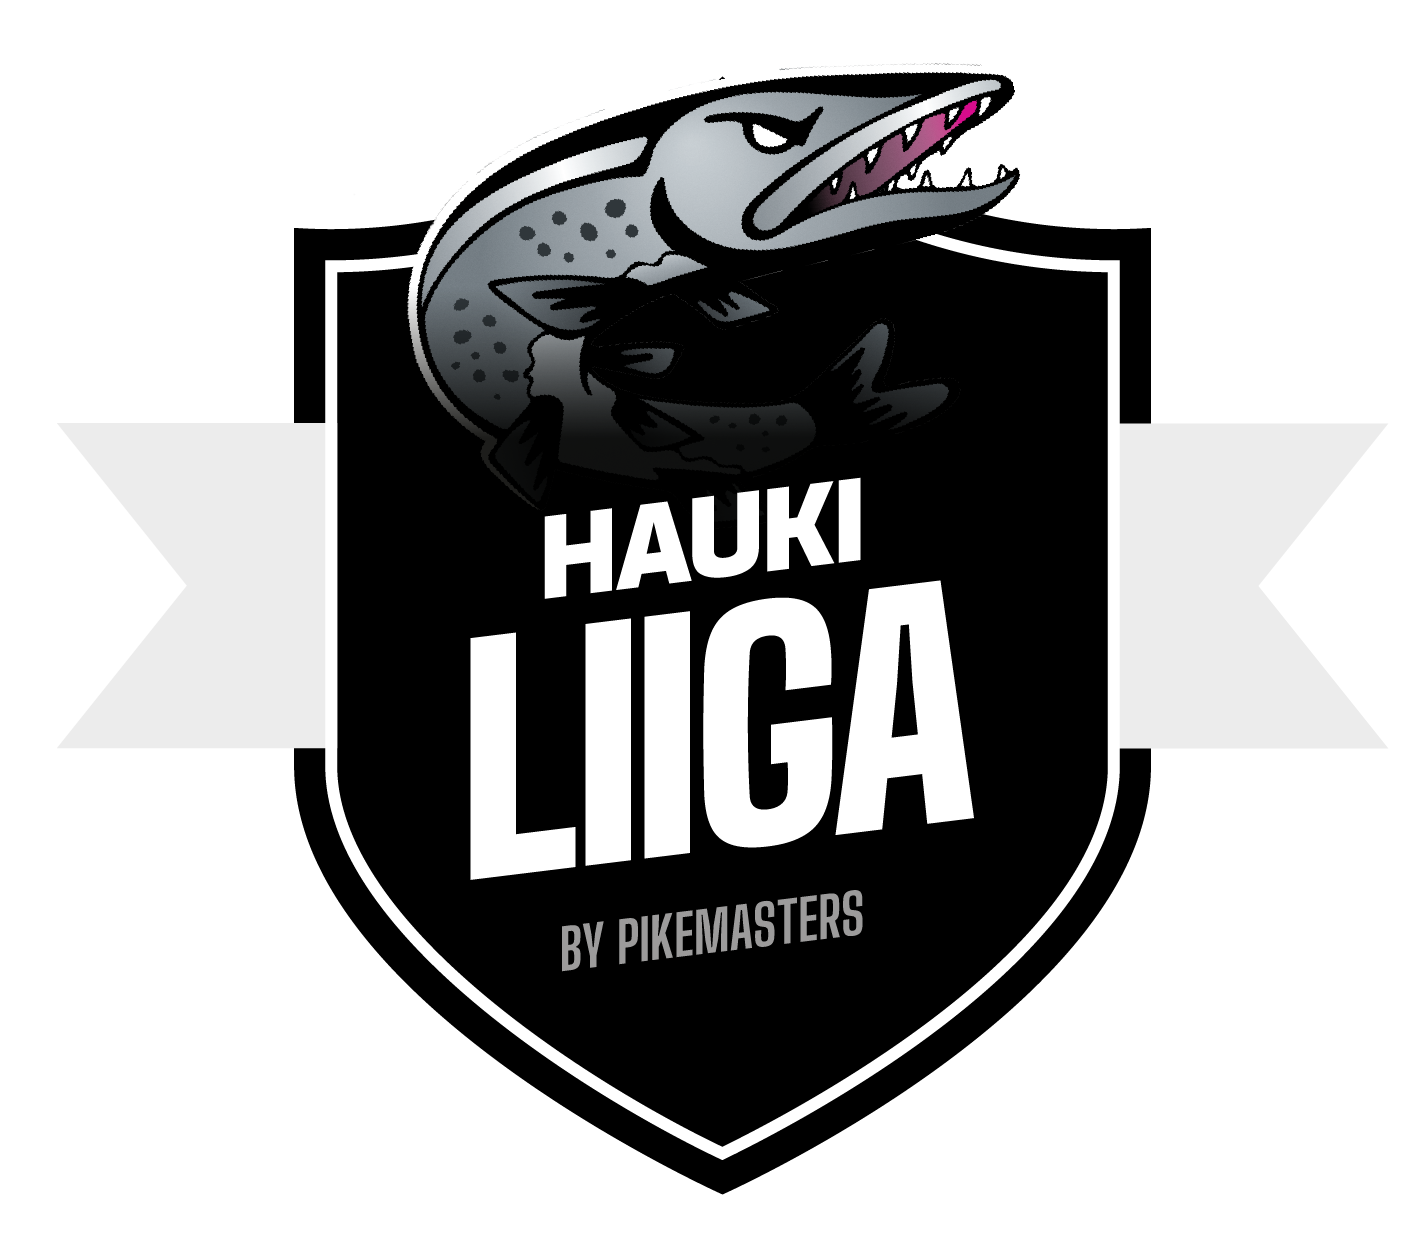 Haukiliiga logo